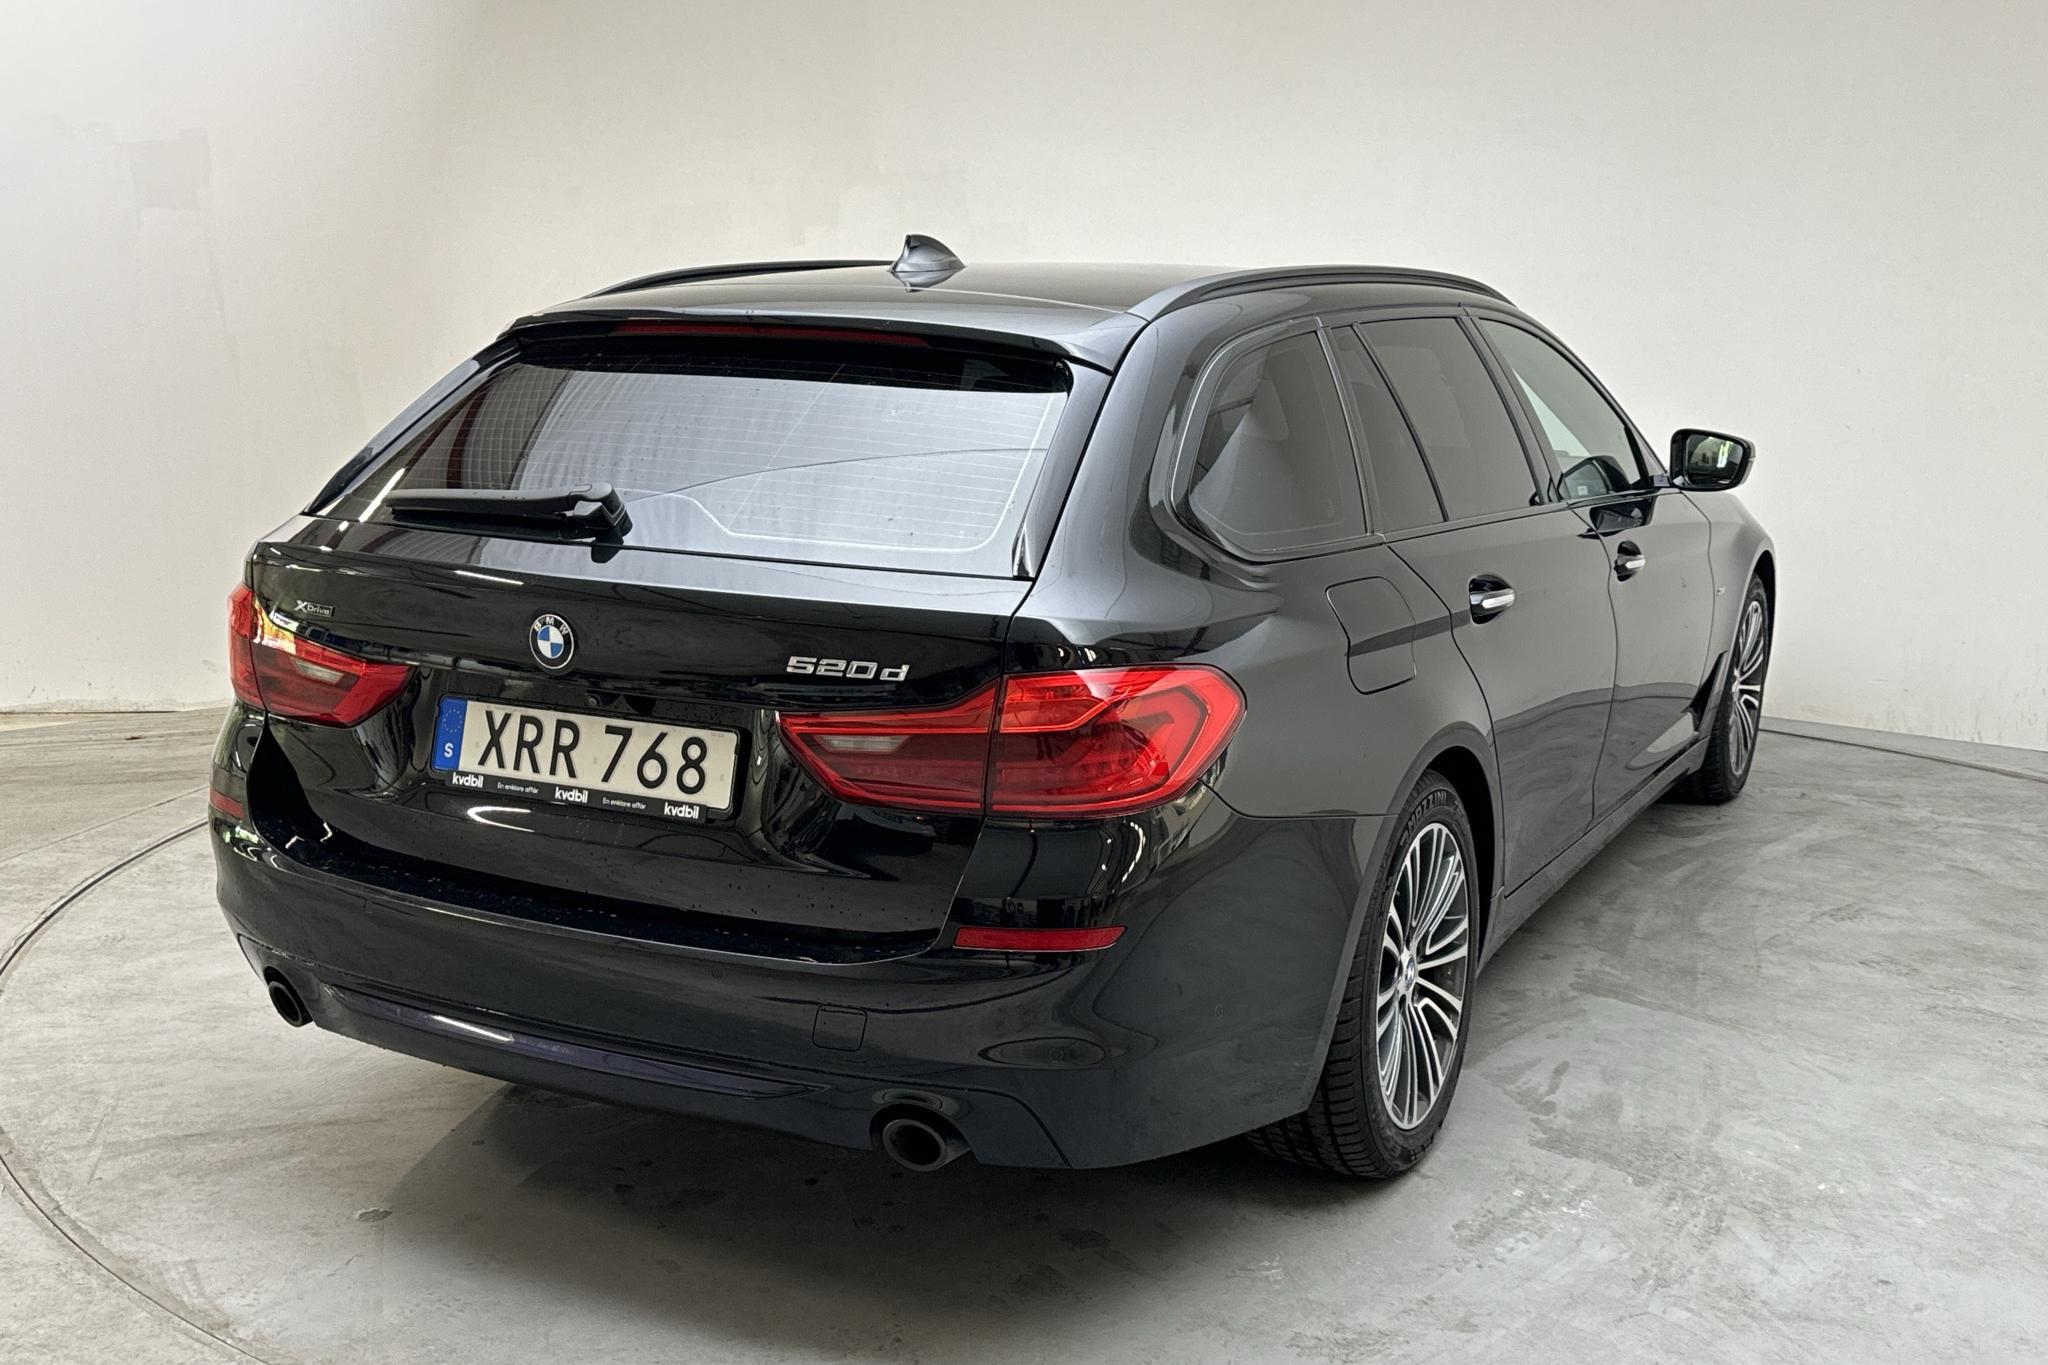 BMW 520d xDrive Touring, G31 (190hk) - 9 777 mil - Automat - svart - 2018